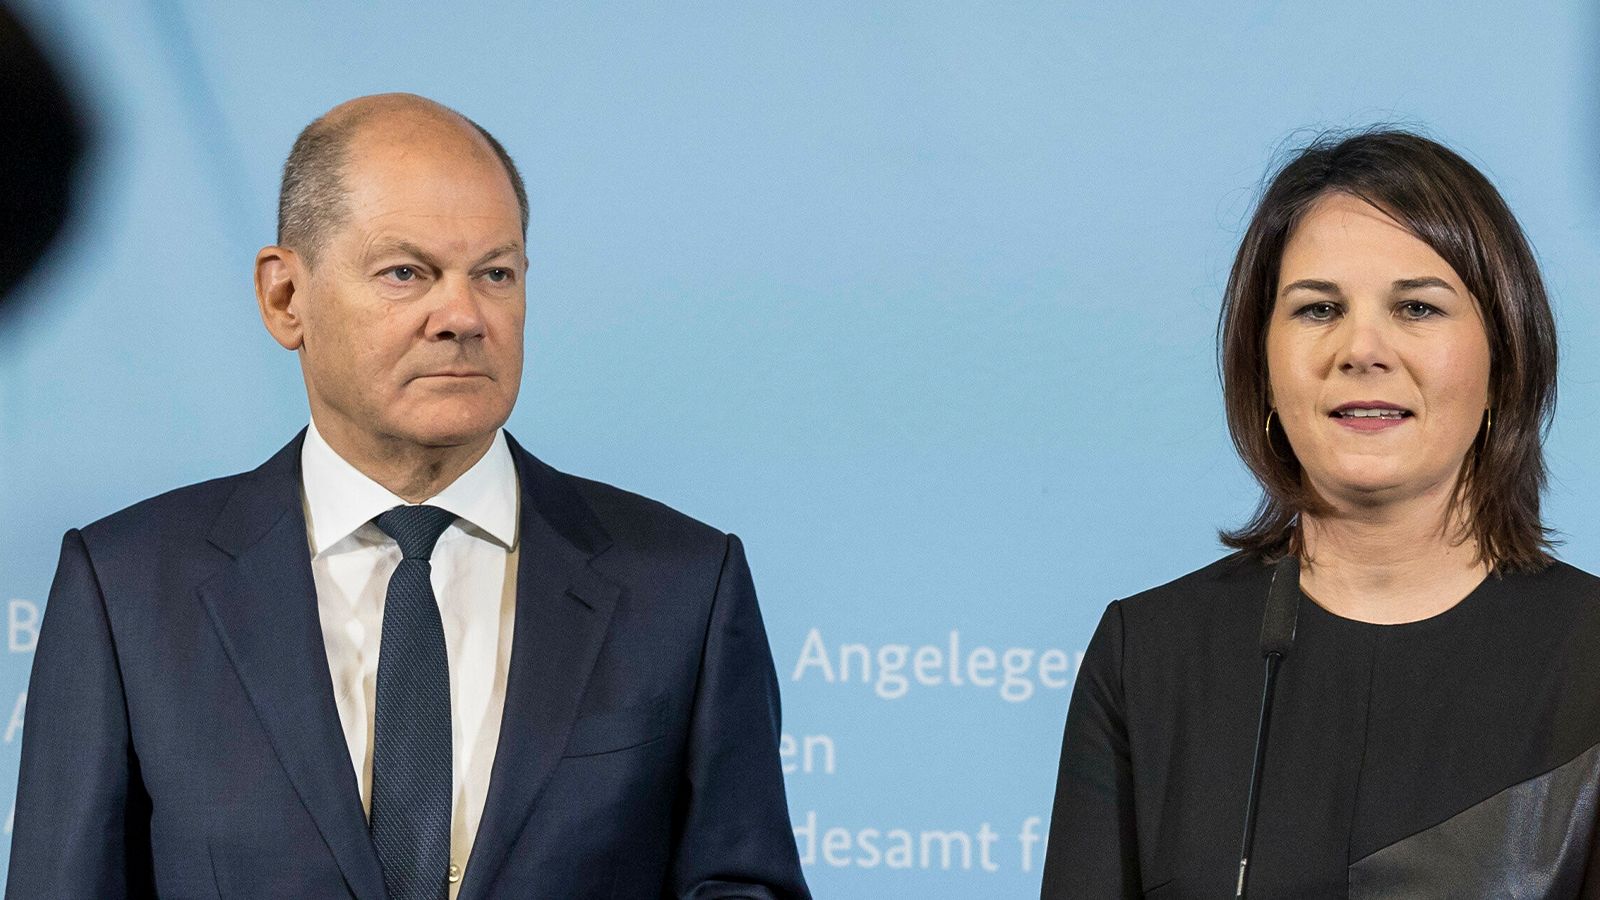 N-TV: Бербок пытается внести феминистские коррективы во внешнюю политику Германии